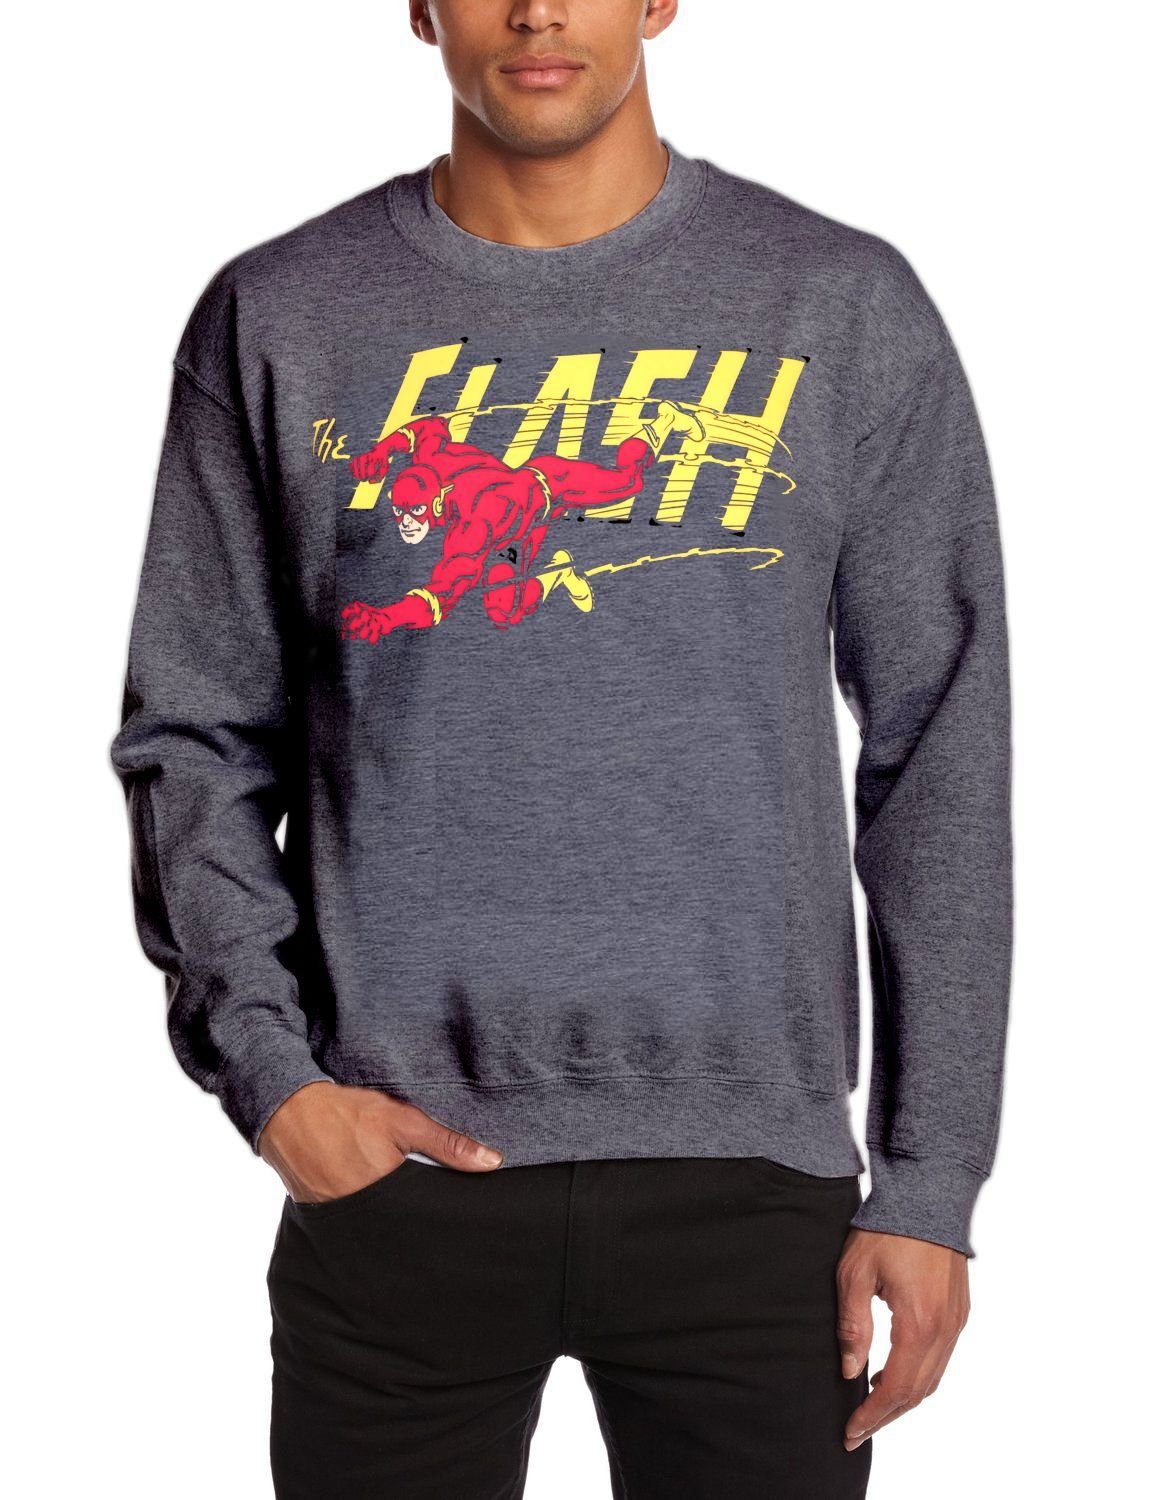 Flash Sweatshirt FLASH Sweatshirt DC Comics der Blitz Jugendliche + Erwachsene Sweater Pullover Pulli Gr. S M L XL XXL